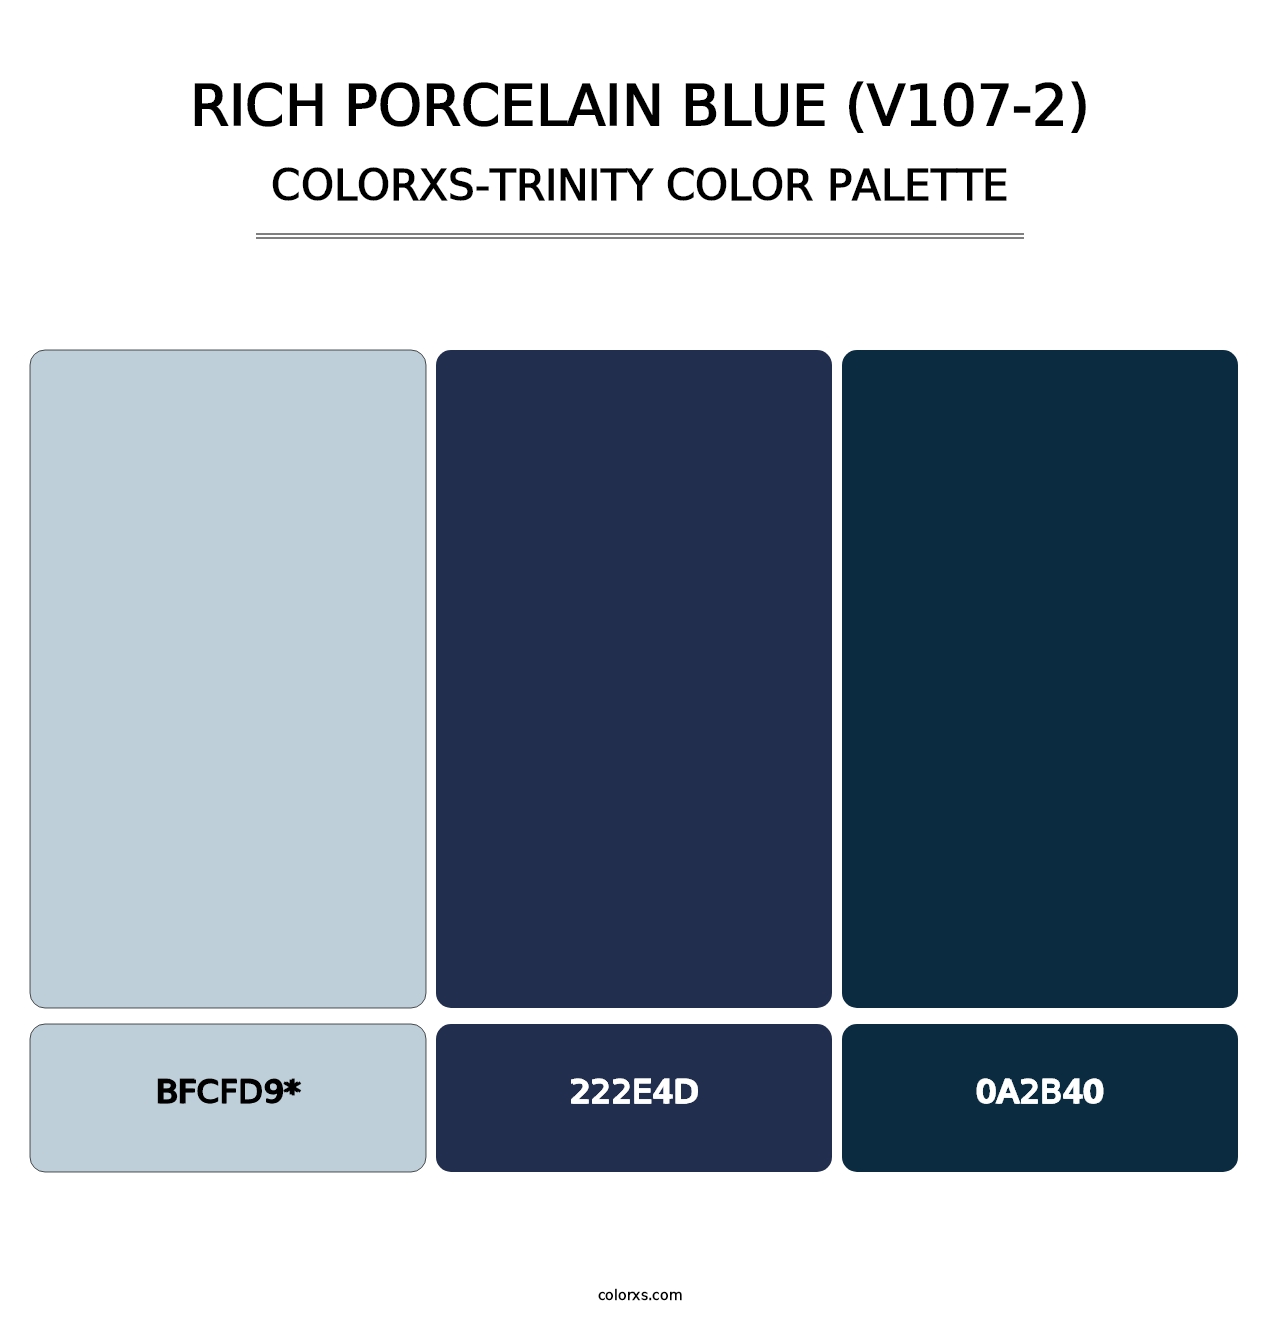 Rich Porcelain Blue (V107-2) - Colorxs Trinity Palette